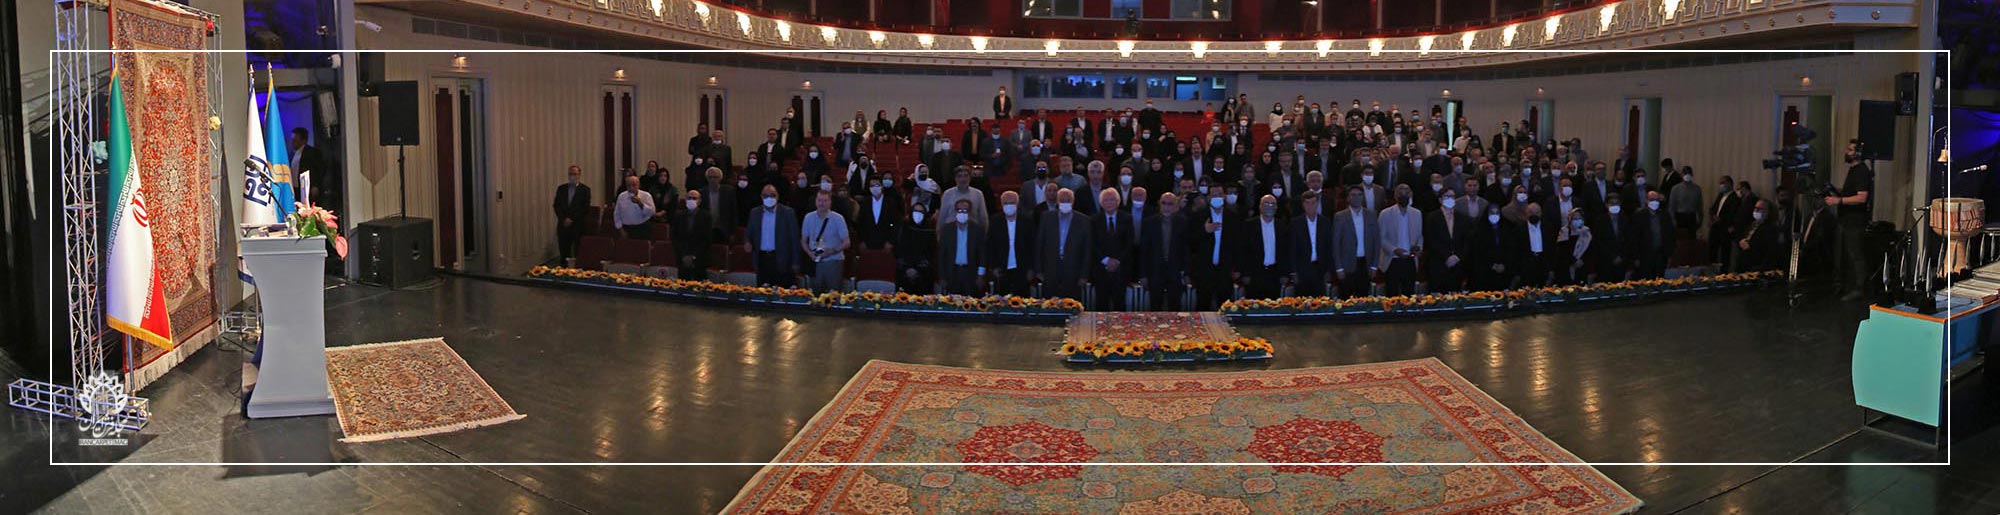 نخستین بزرگداشت مشاهیر فرش ایران در تالار وحدت برگزار شد